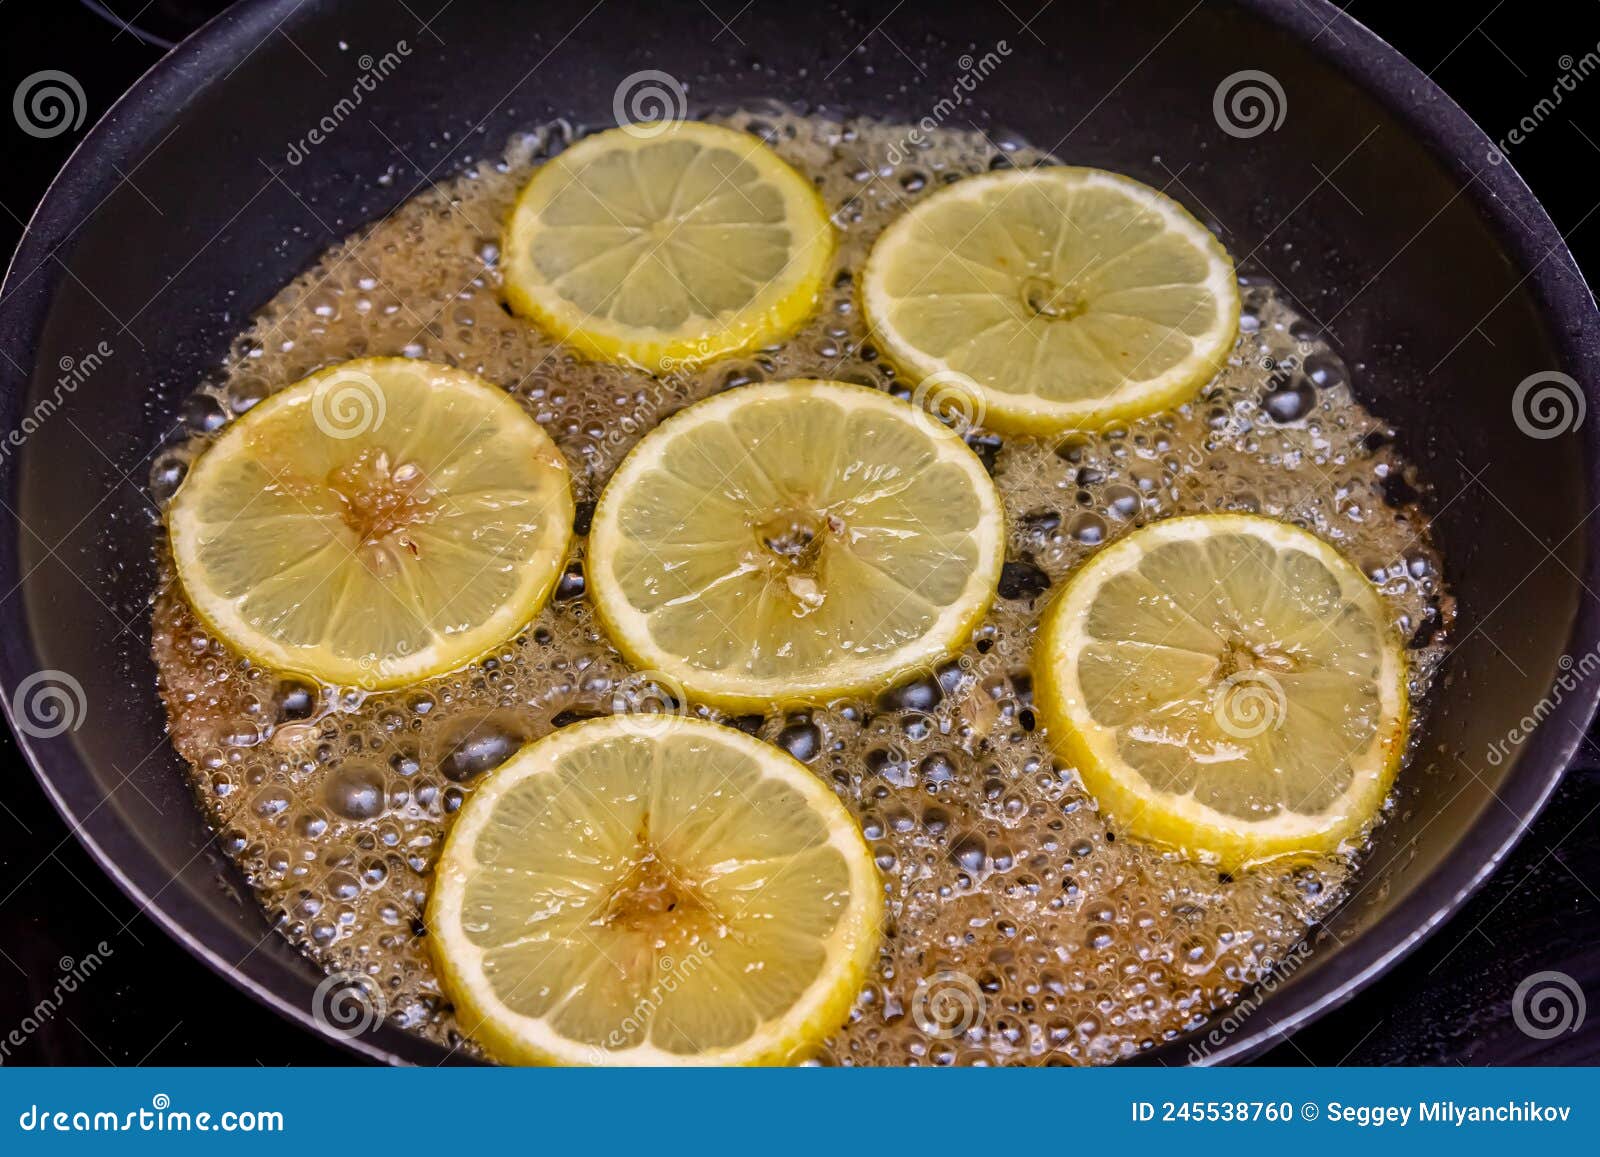 Caramelized Lemon Slice on a Lemon Cake Decorated with Caramelized ...